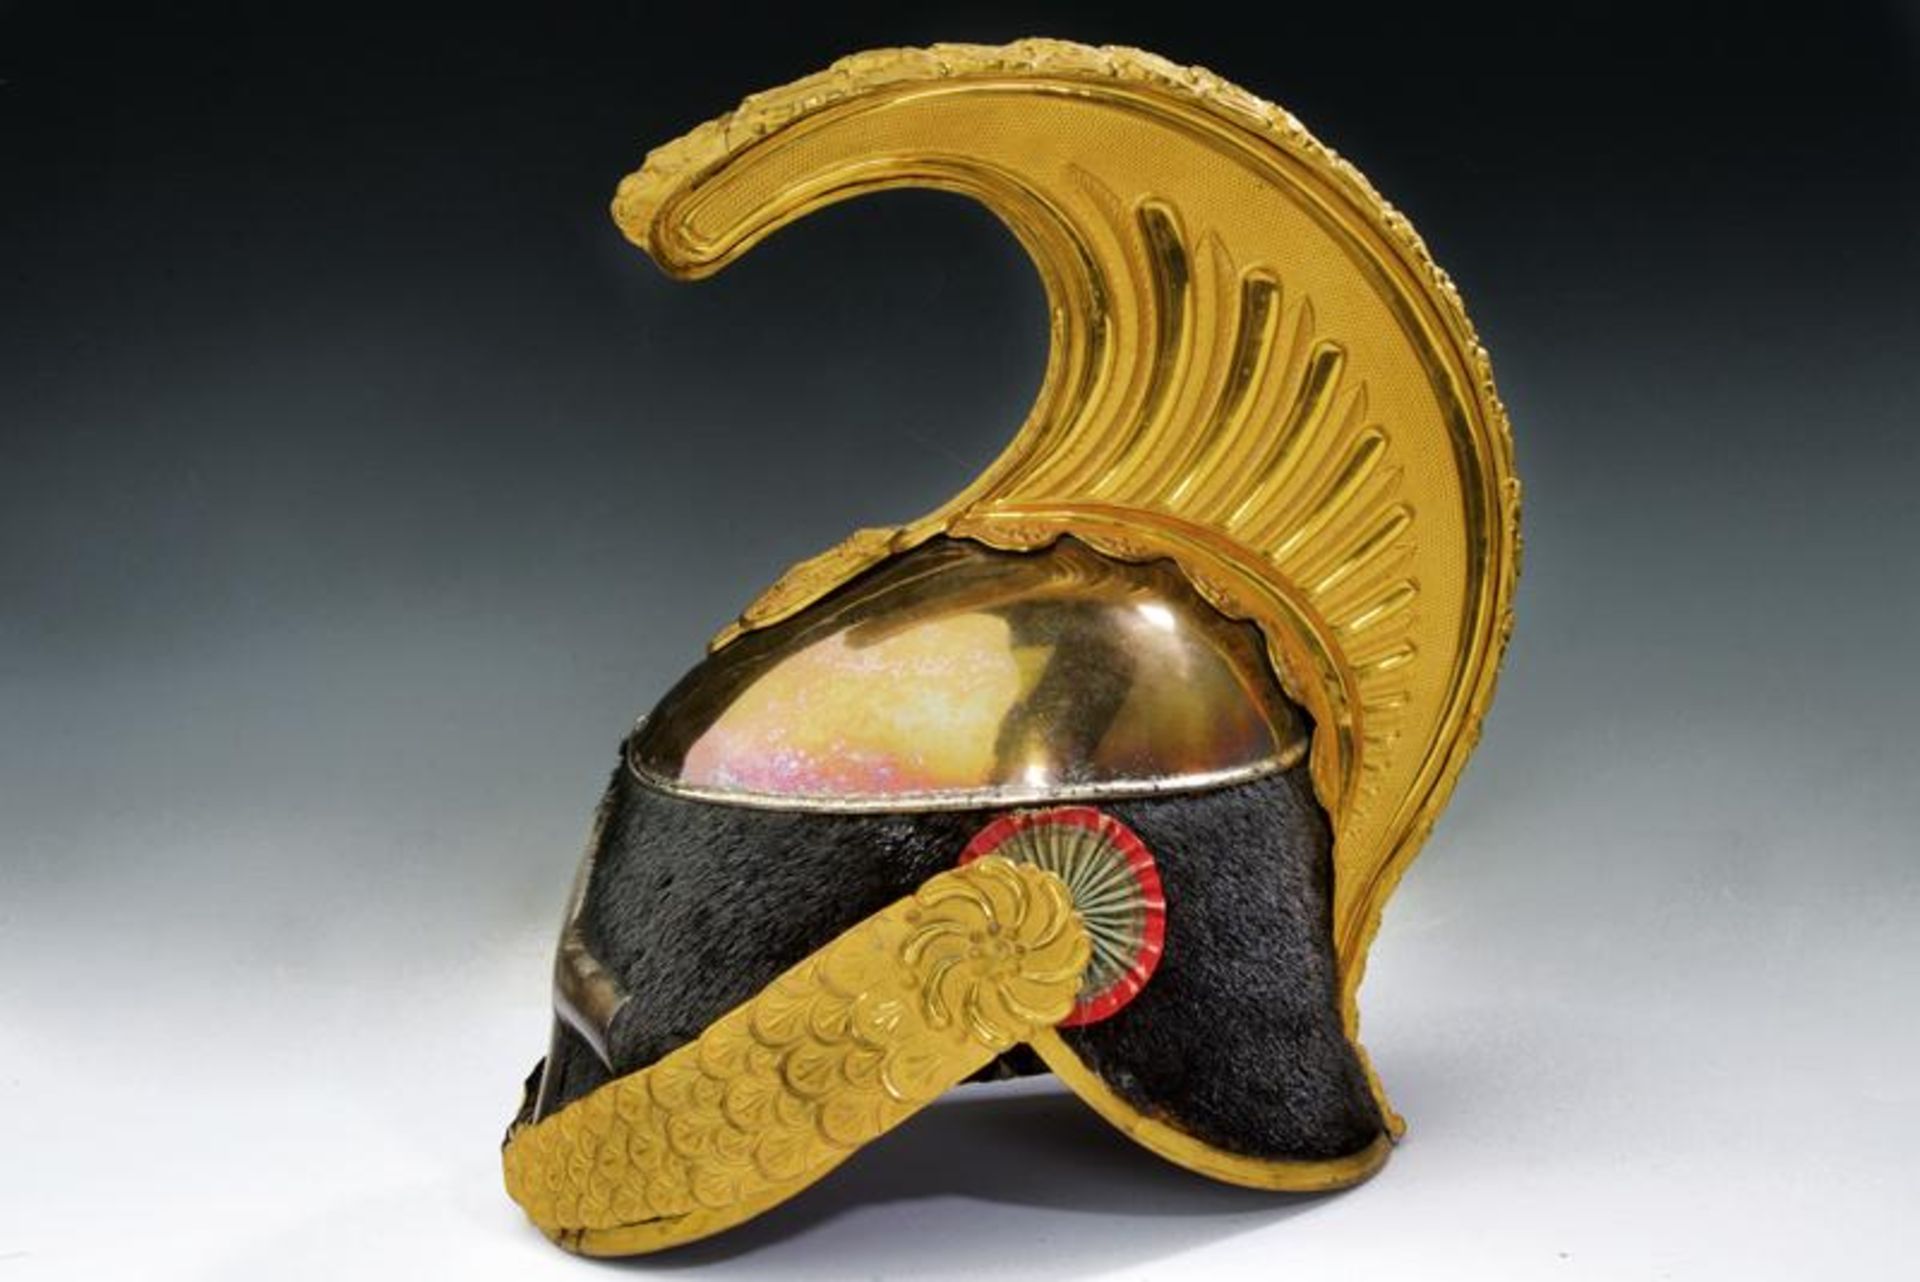 A cavalry officer's helmet, epoch king Umberto I of Italy - Bild 6 aus 7